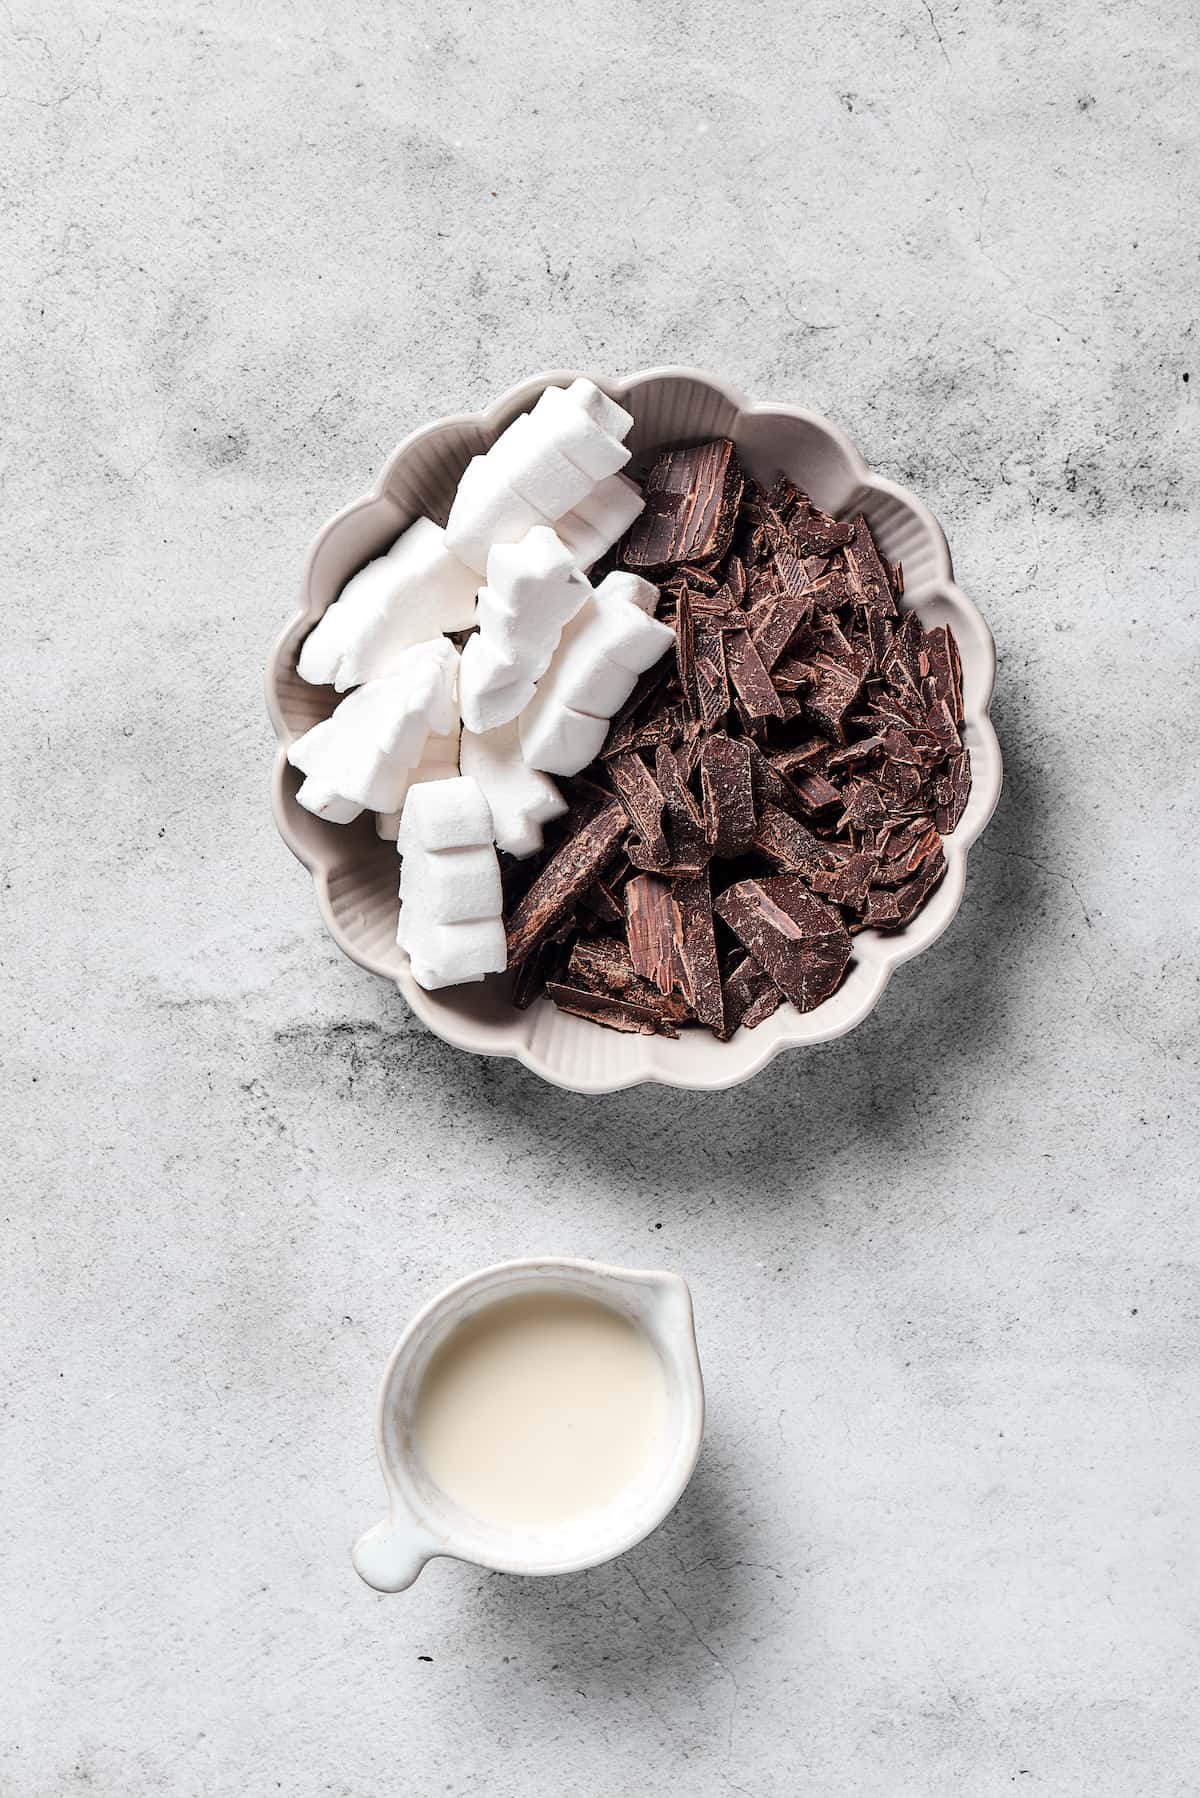 Dark chocolate, marshmallows, and heavy cream.